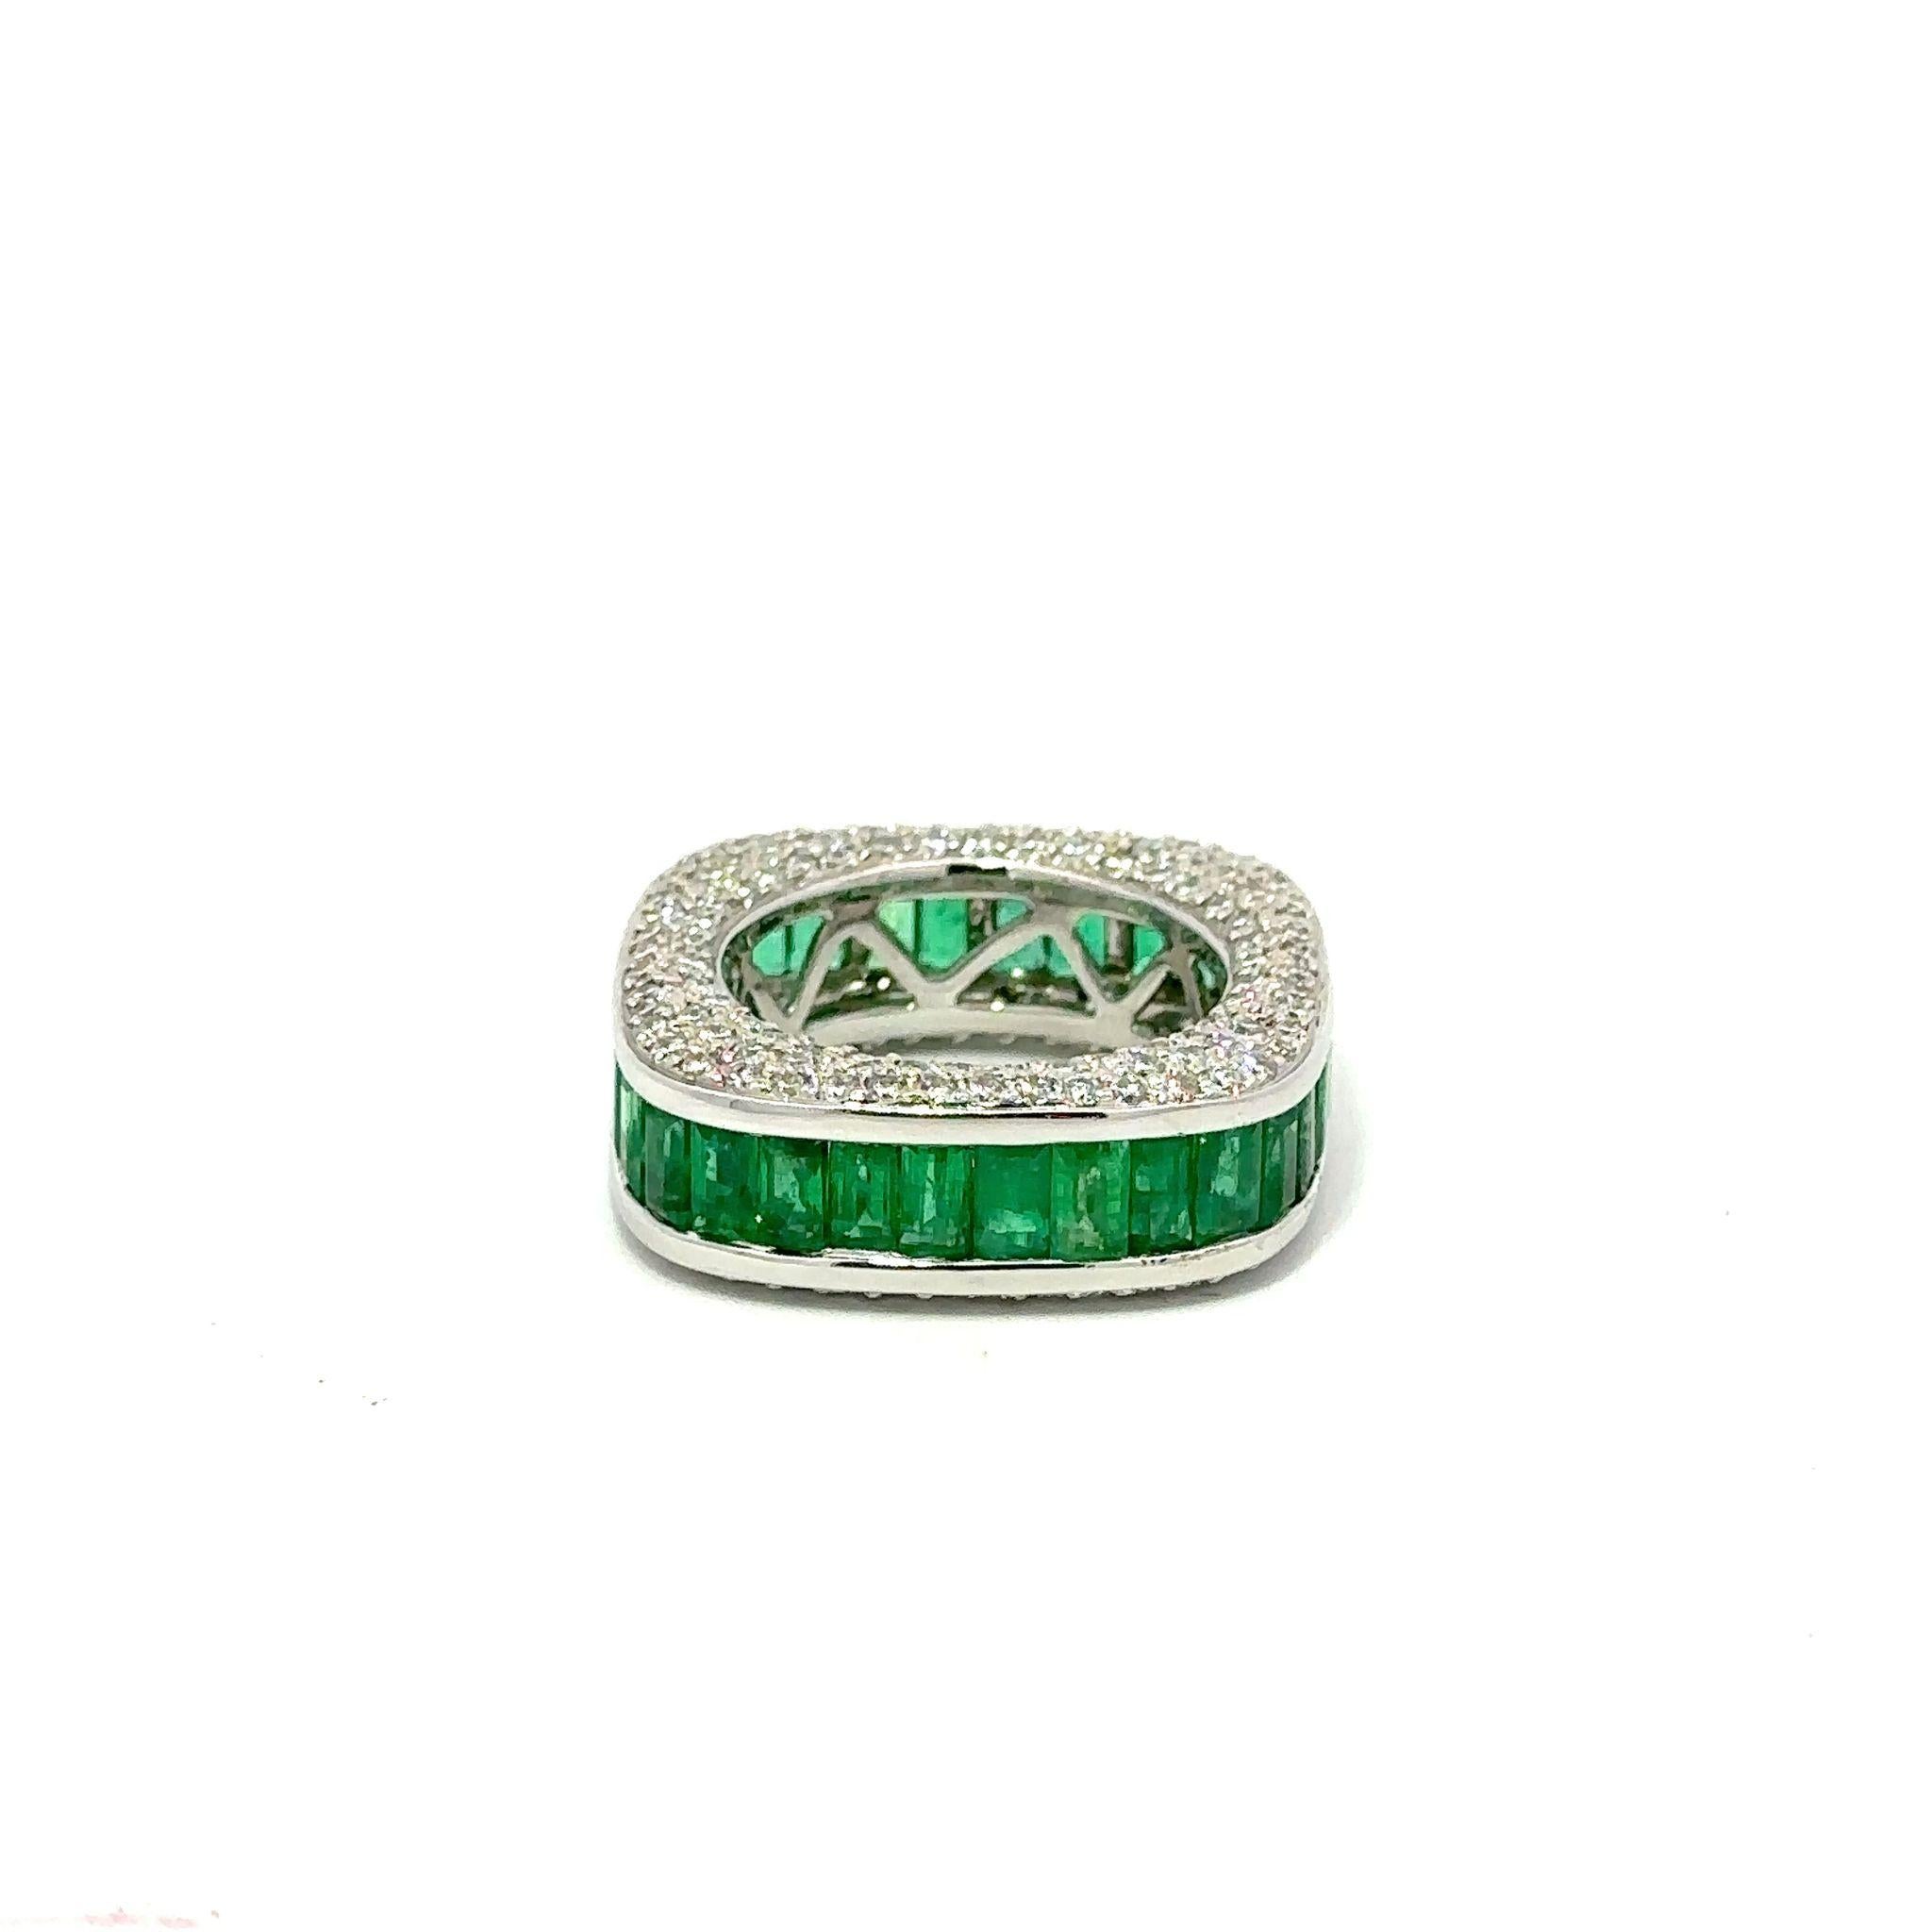 Modernes, kissenförmiges Band mit Diamantenpavé und Smaragden im Kannelürenschliff.  Um 2000.  Die 212 runden Diamanten haben insgesamt 2,25 Karat, Farbe G-H und Reinheit VS2-I1.  Die 34 Smaragde haben insgesamt 5,65 Karat und eine sehr schöne